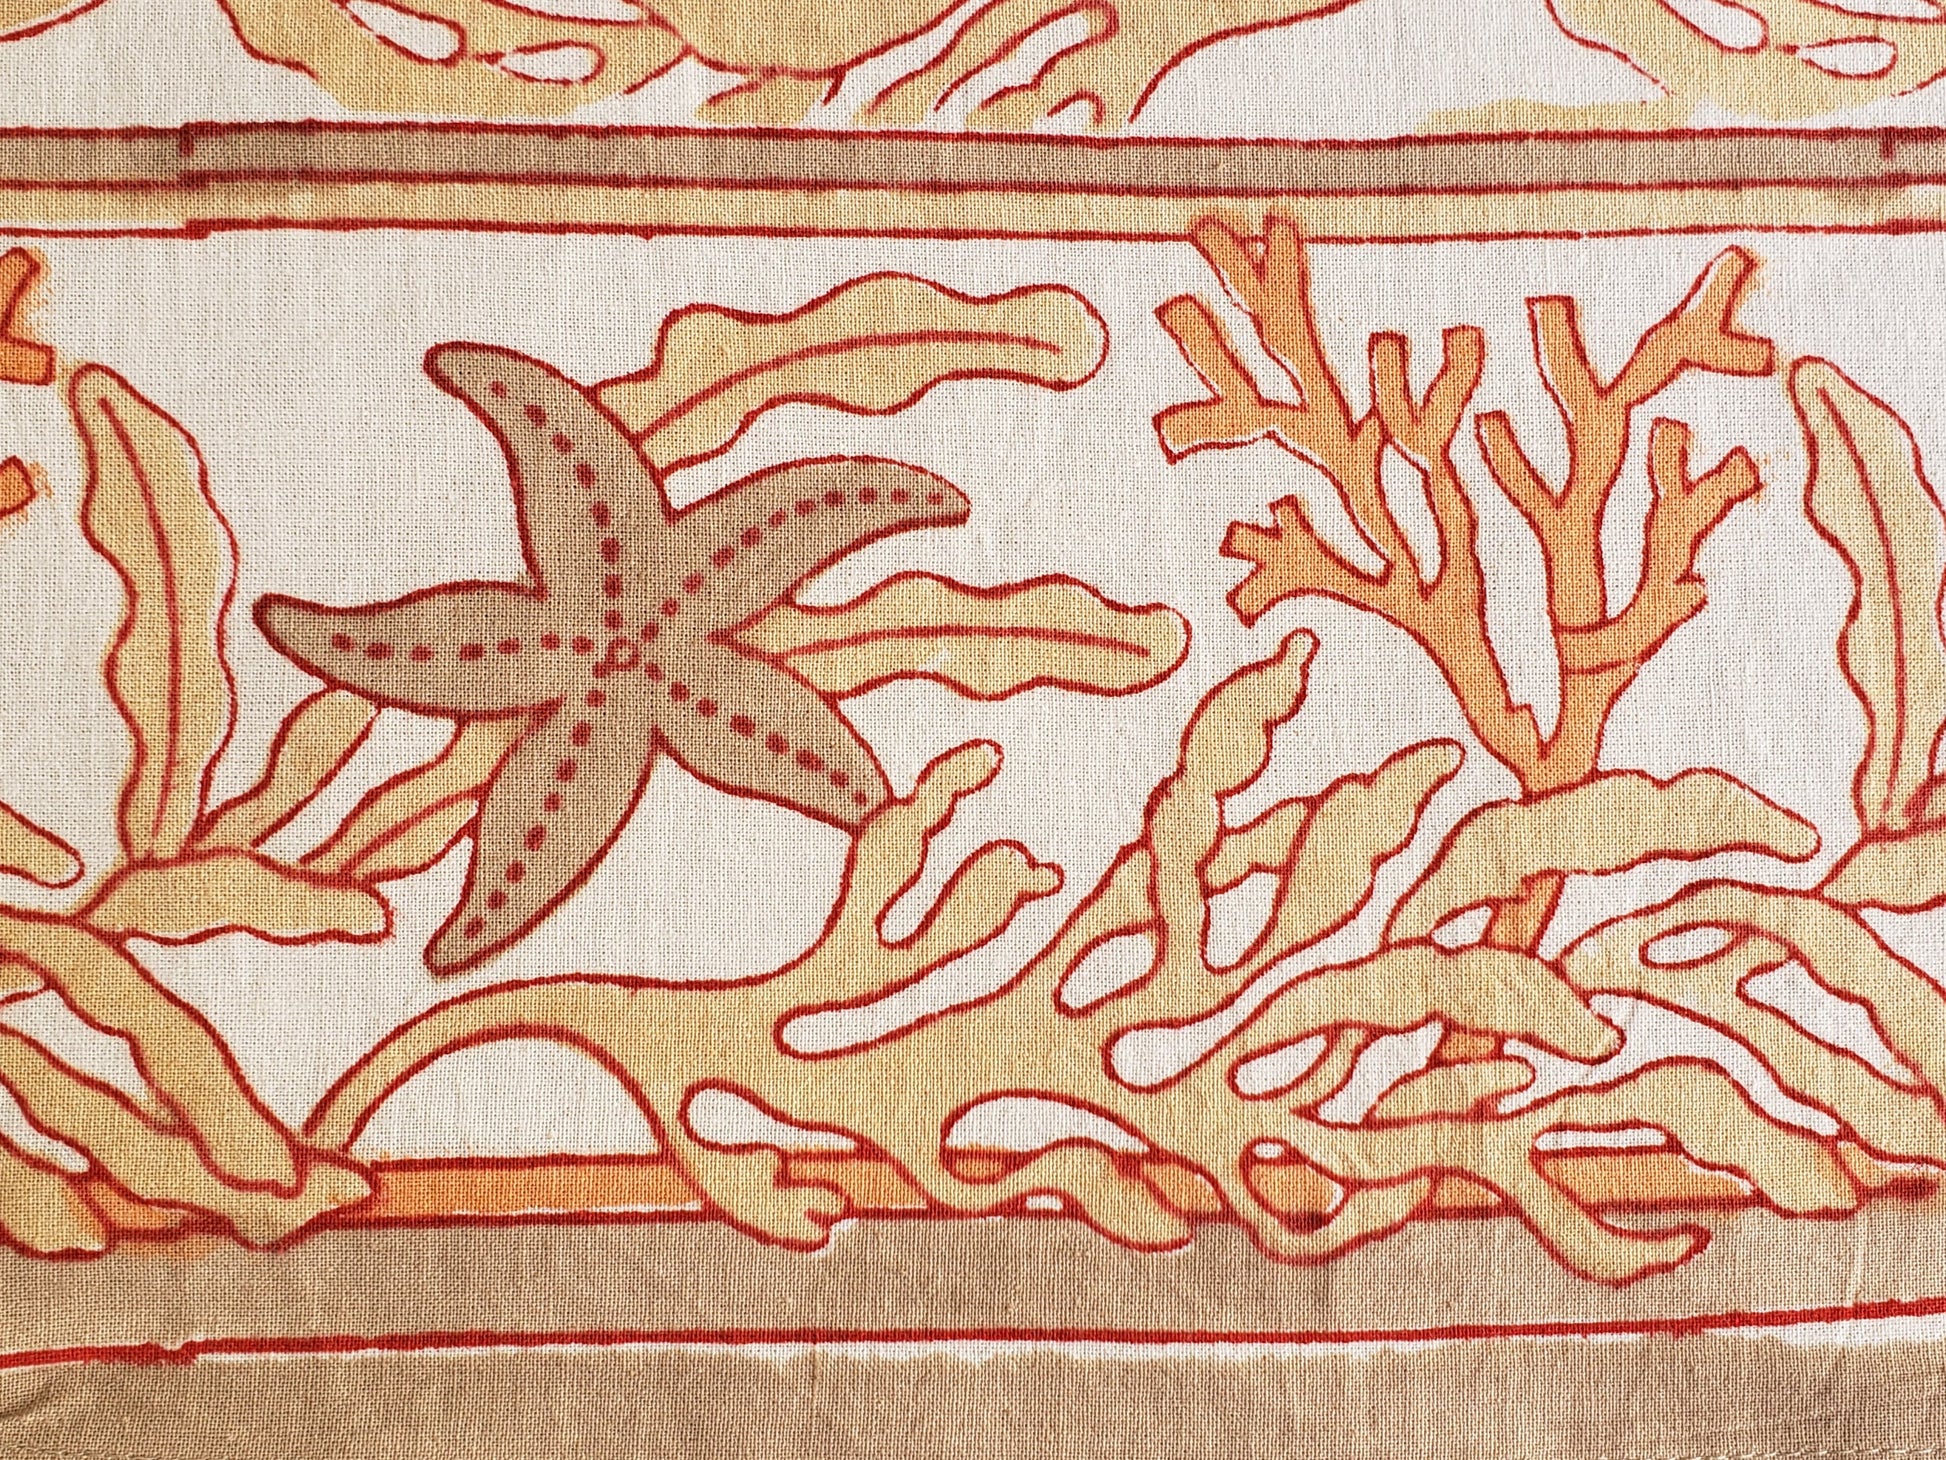 Mantel cuadrado con borde estampado con corales y estrella de mar